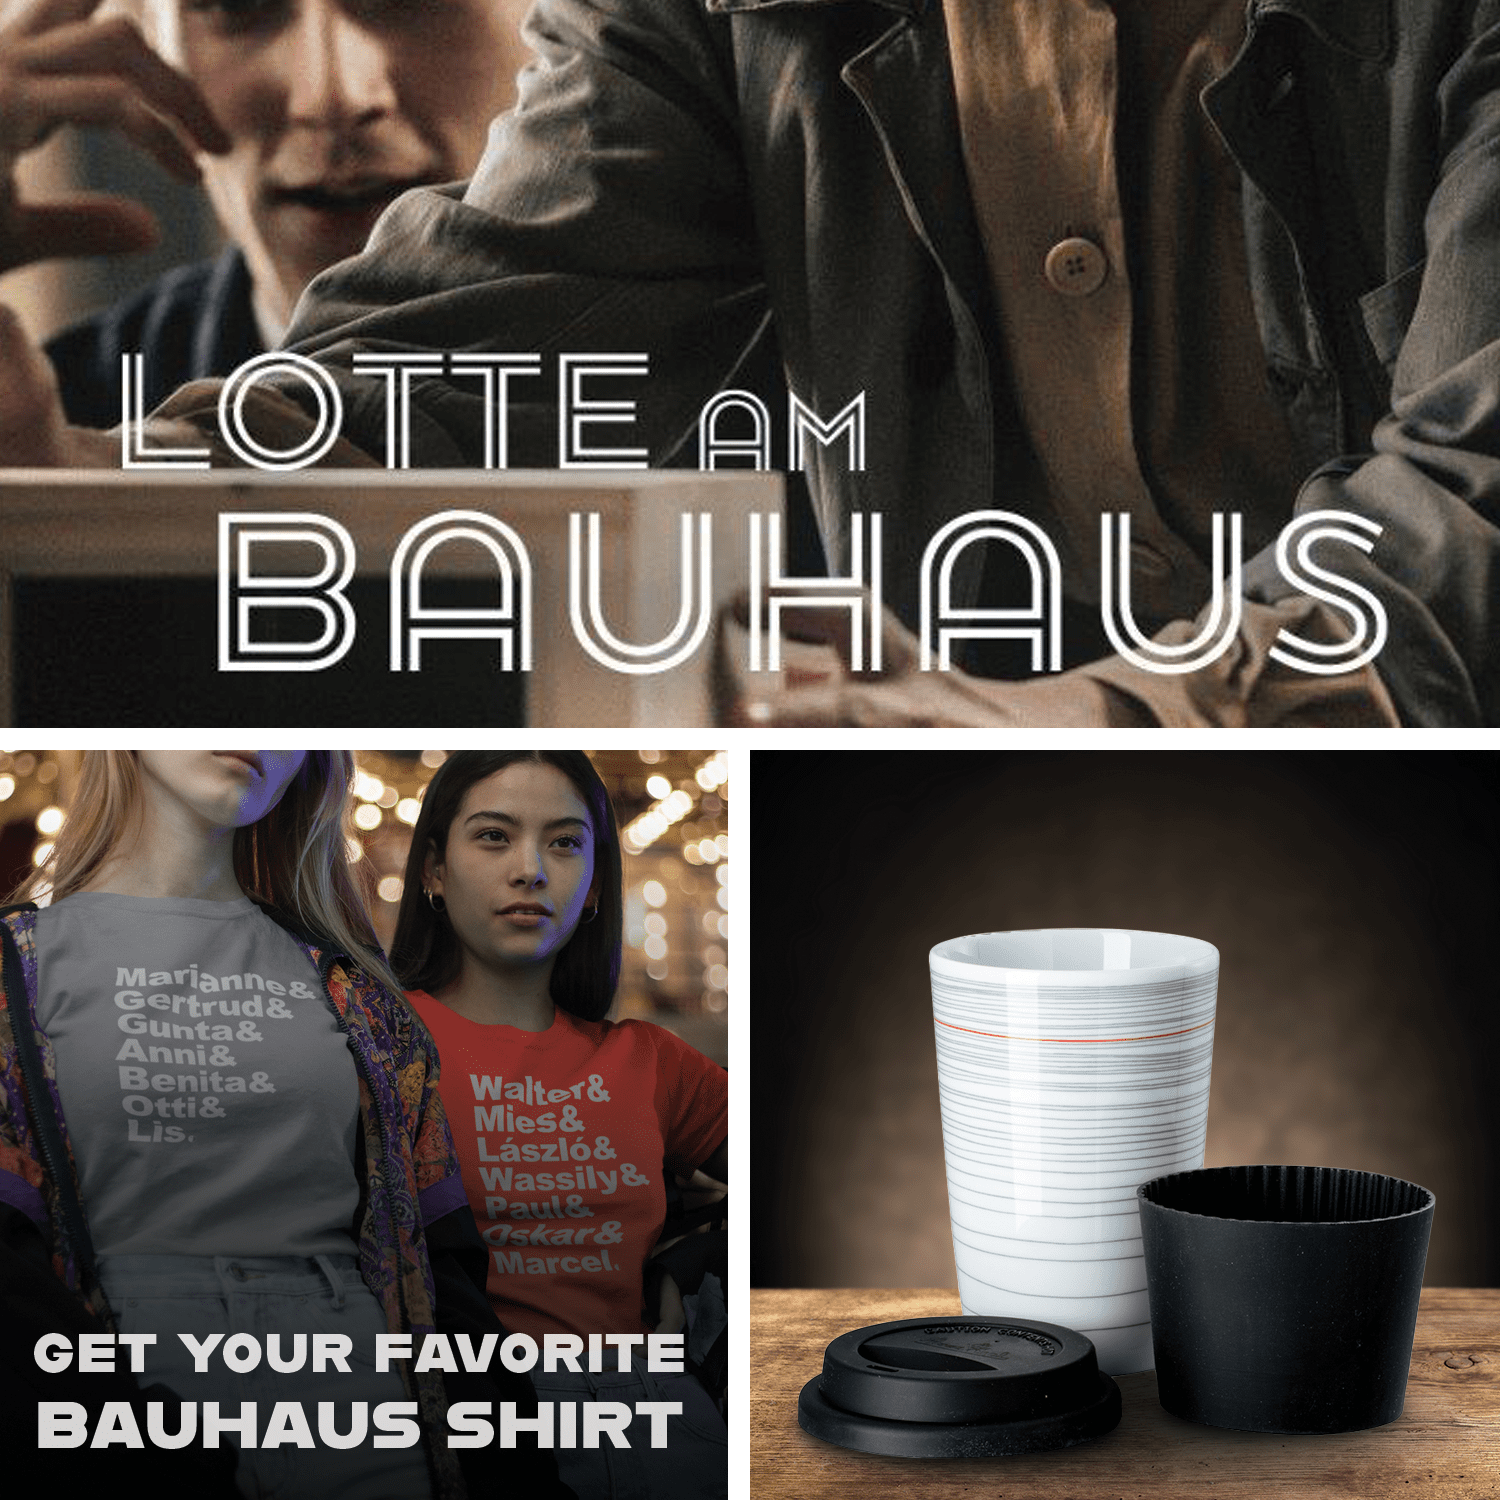 صورة Lotte am Bauhaus + Mug Gropius + Favorite Shirt
